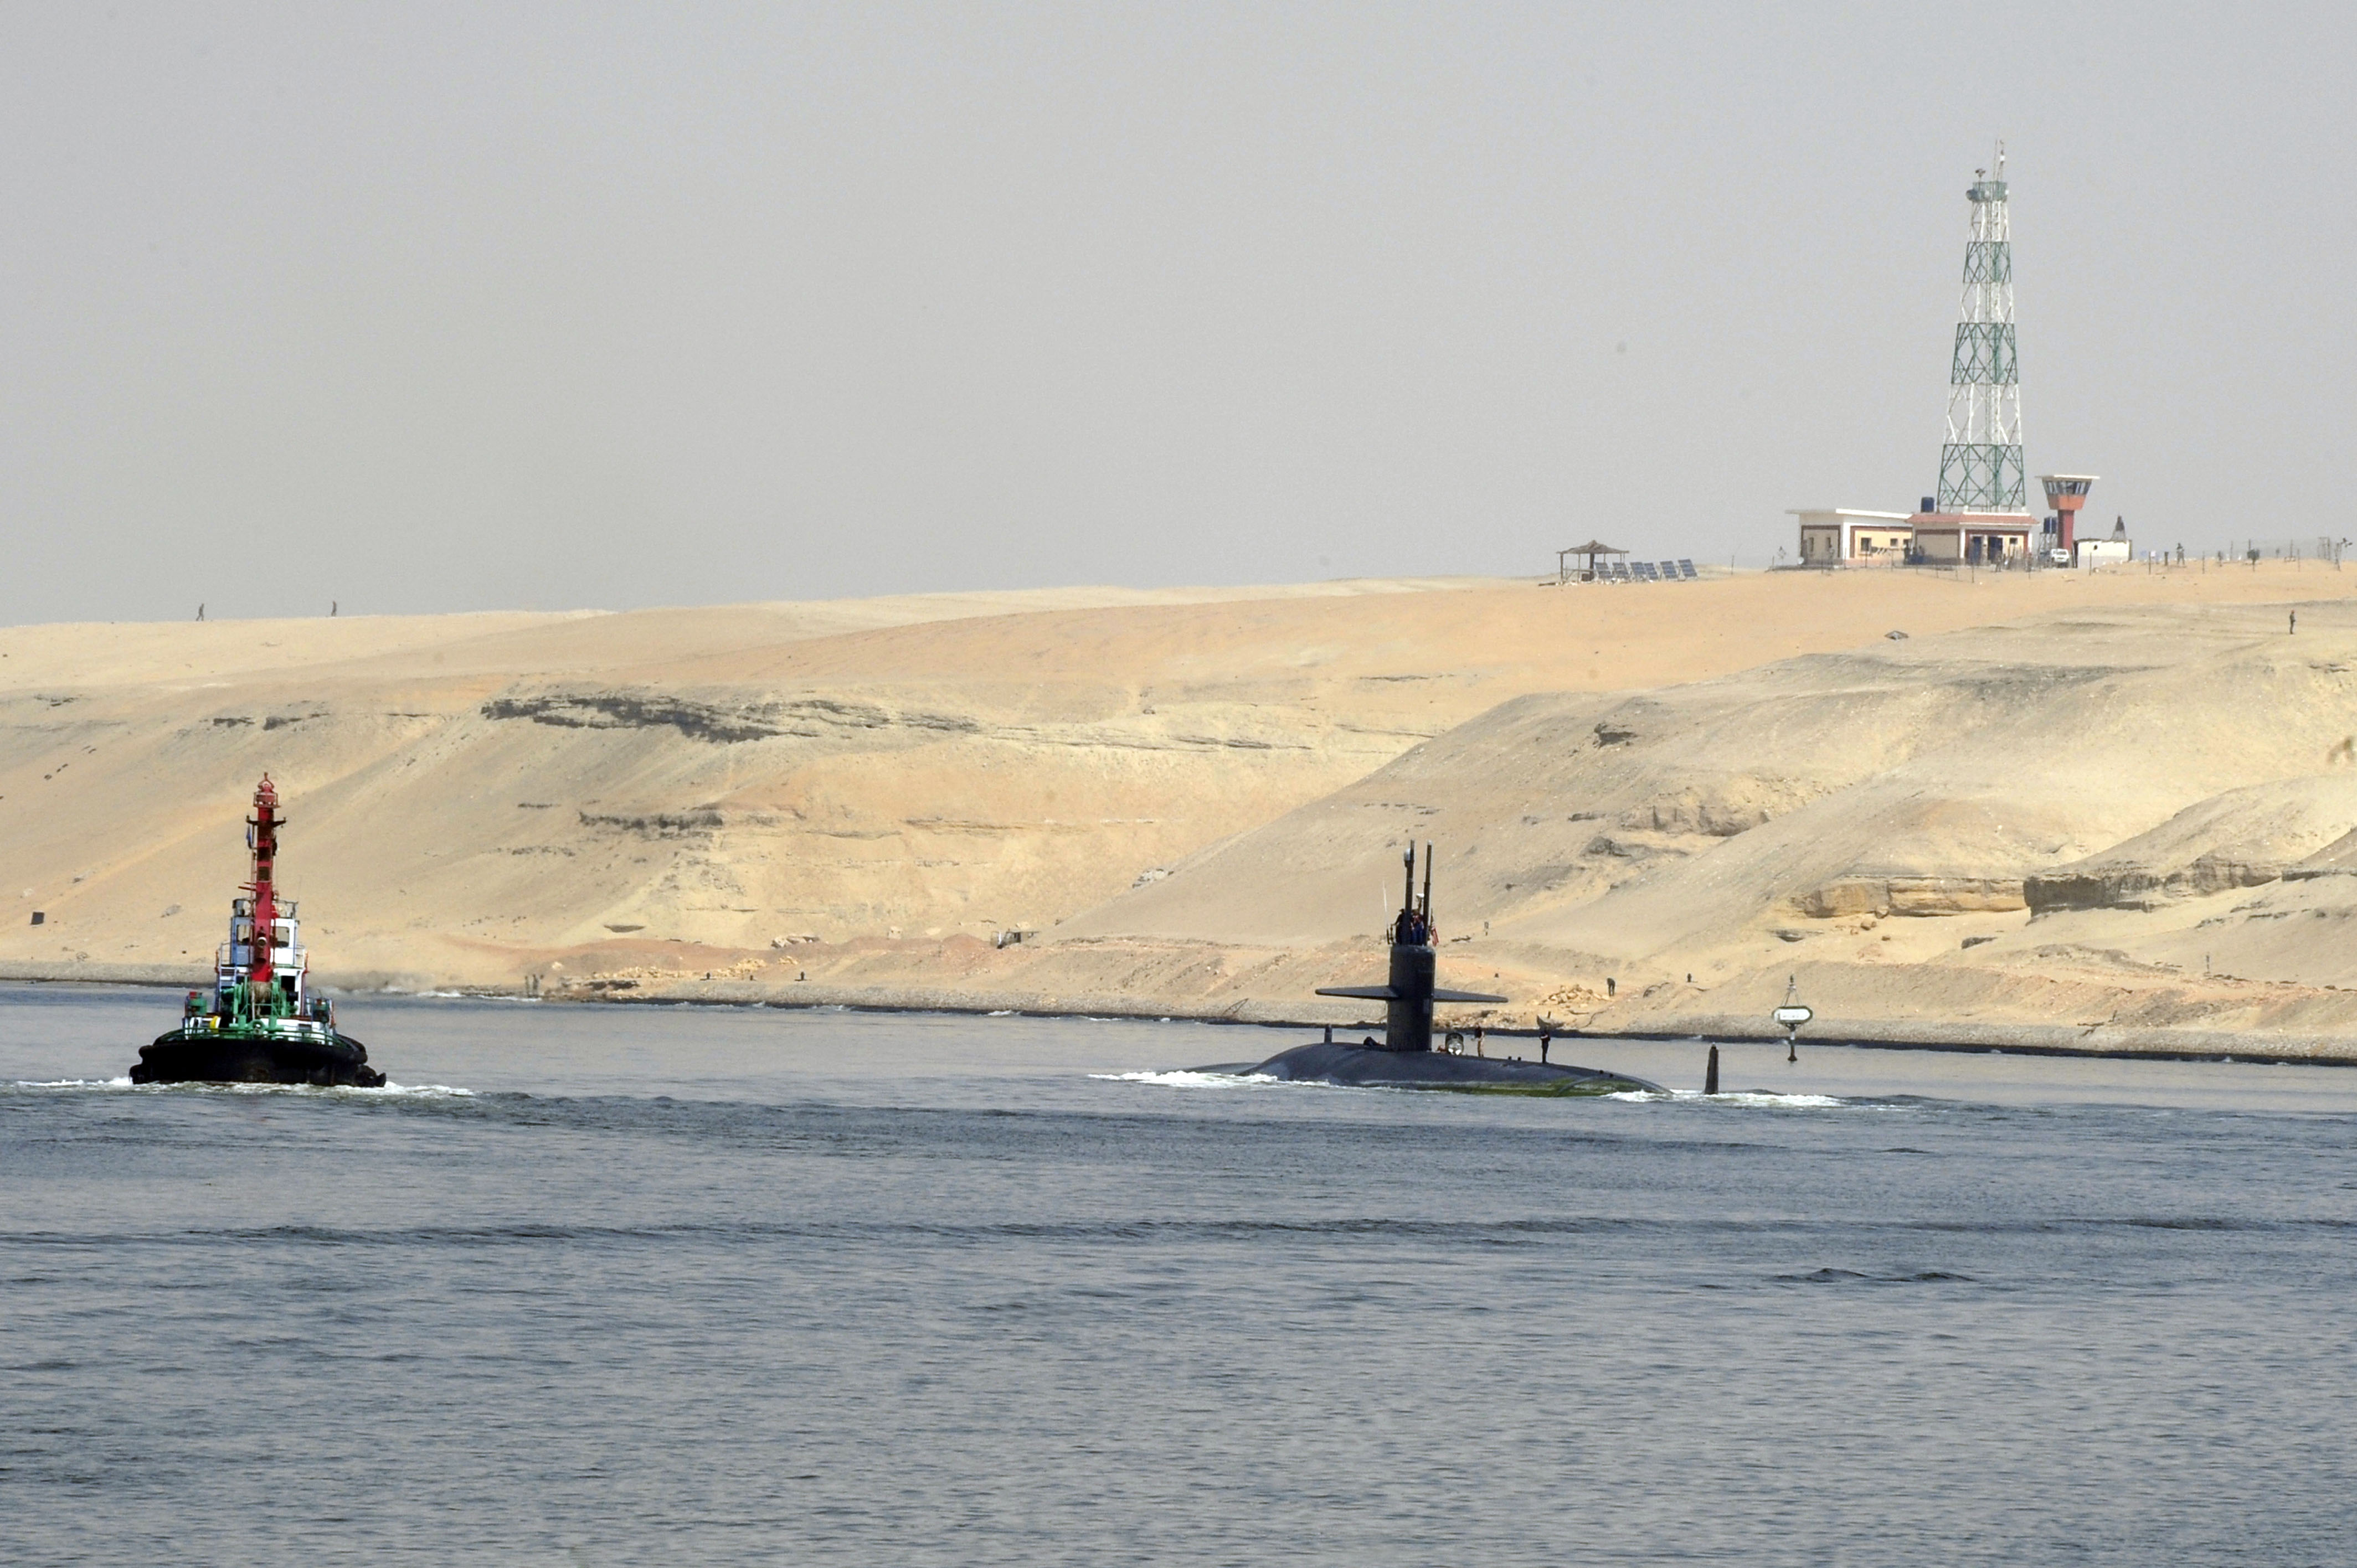 USS NORFOLK SSN-714 am 04.10.2012 im Suez-KanalBild: U.S. Navy